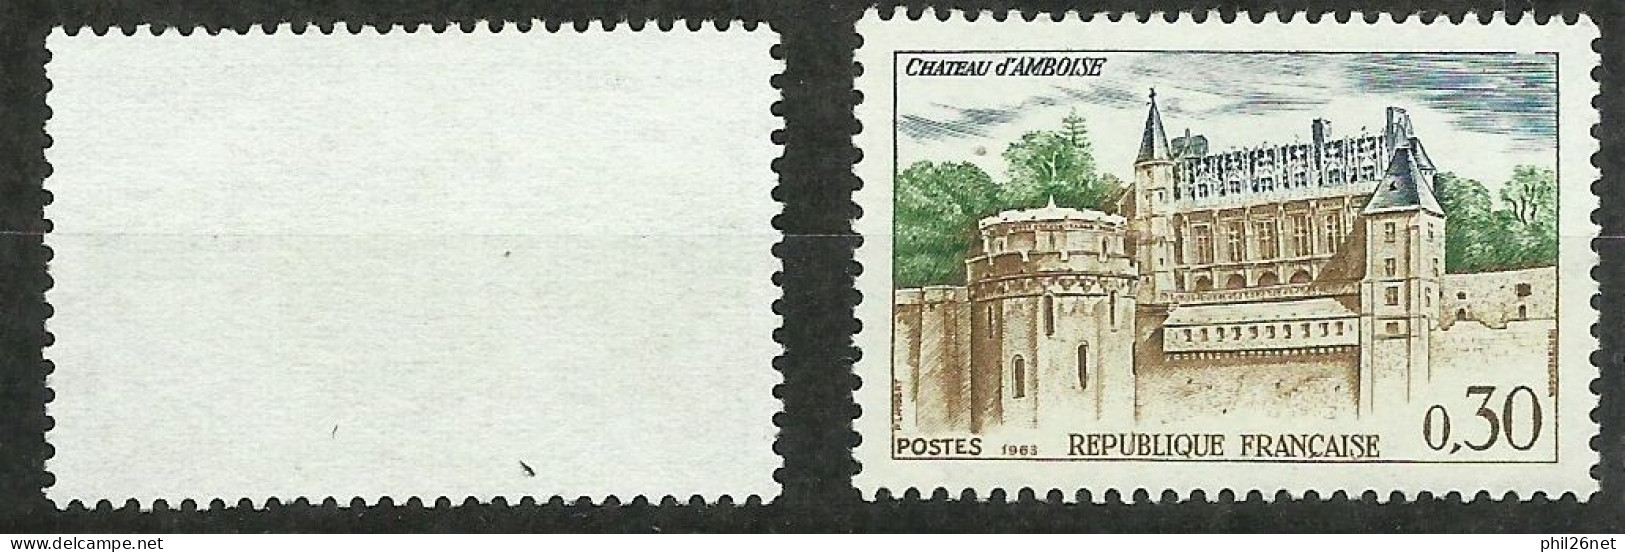 France N°1390 Château D'Amboise Jaune Vert Et Gris Neuf (*) B/TB  Timbre Type Sur Les Scans Pour Comparer Soldé ! ! ! - Unused Stamps